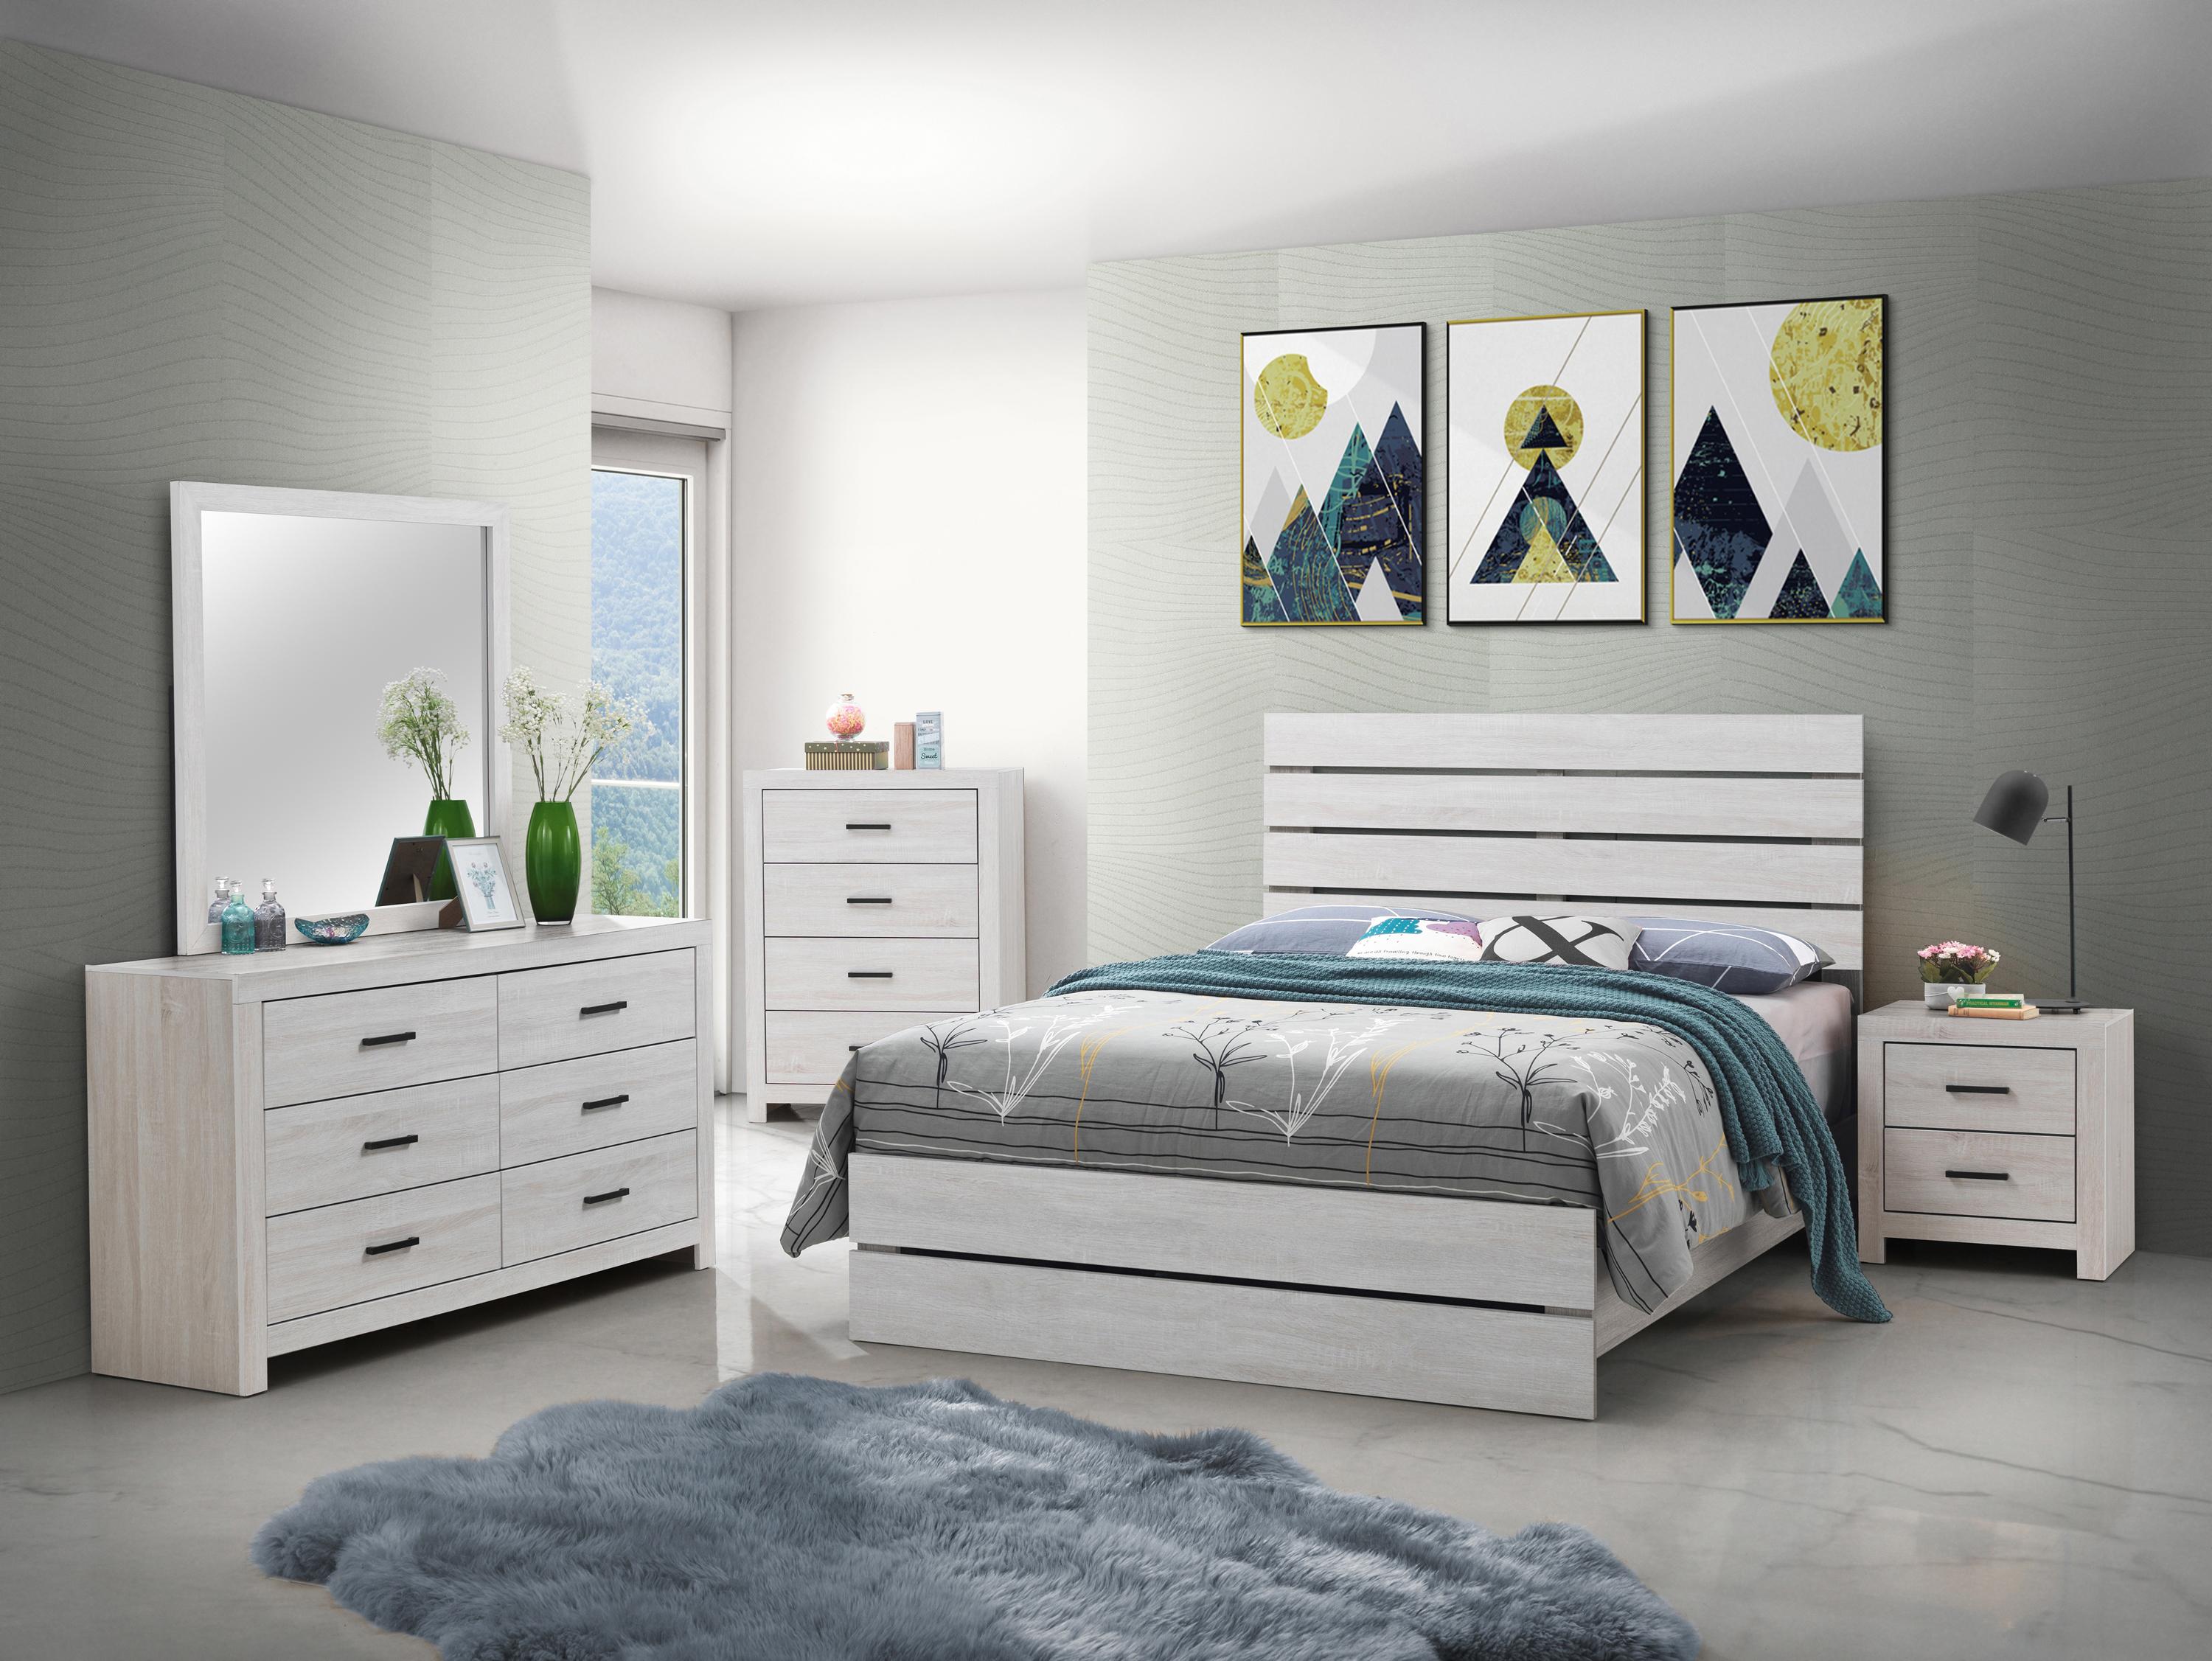 

    
Rustic Coastal White Wood Queen Panel Bedroom Set 3pcs Coaster 207051Q Marion
